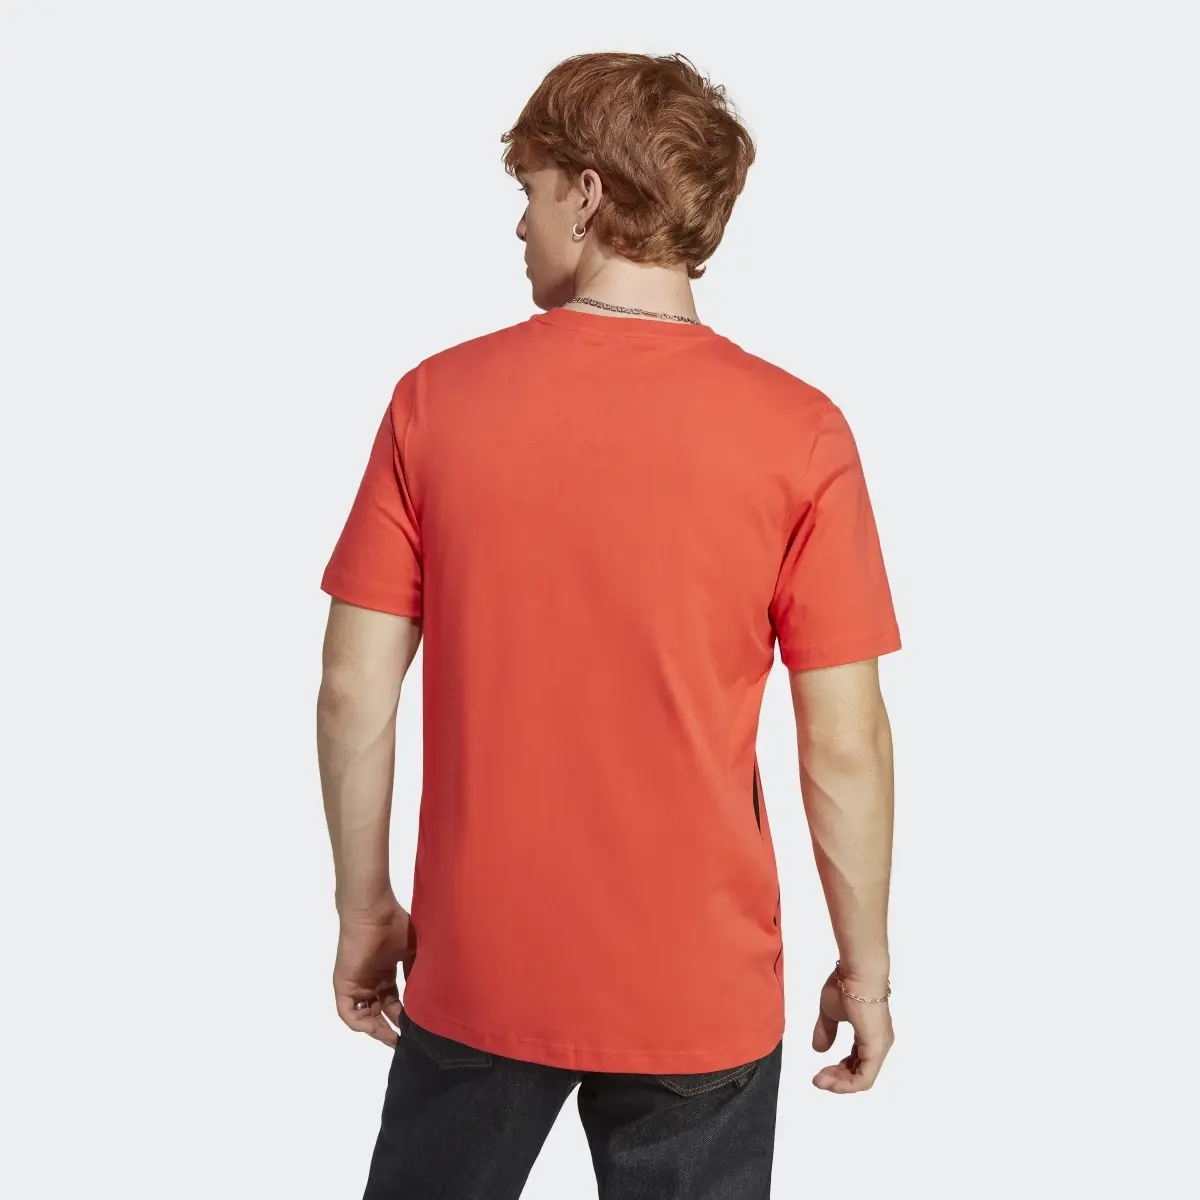 Adidas Camiseta Colourblock. 3